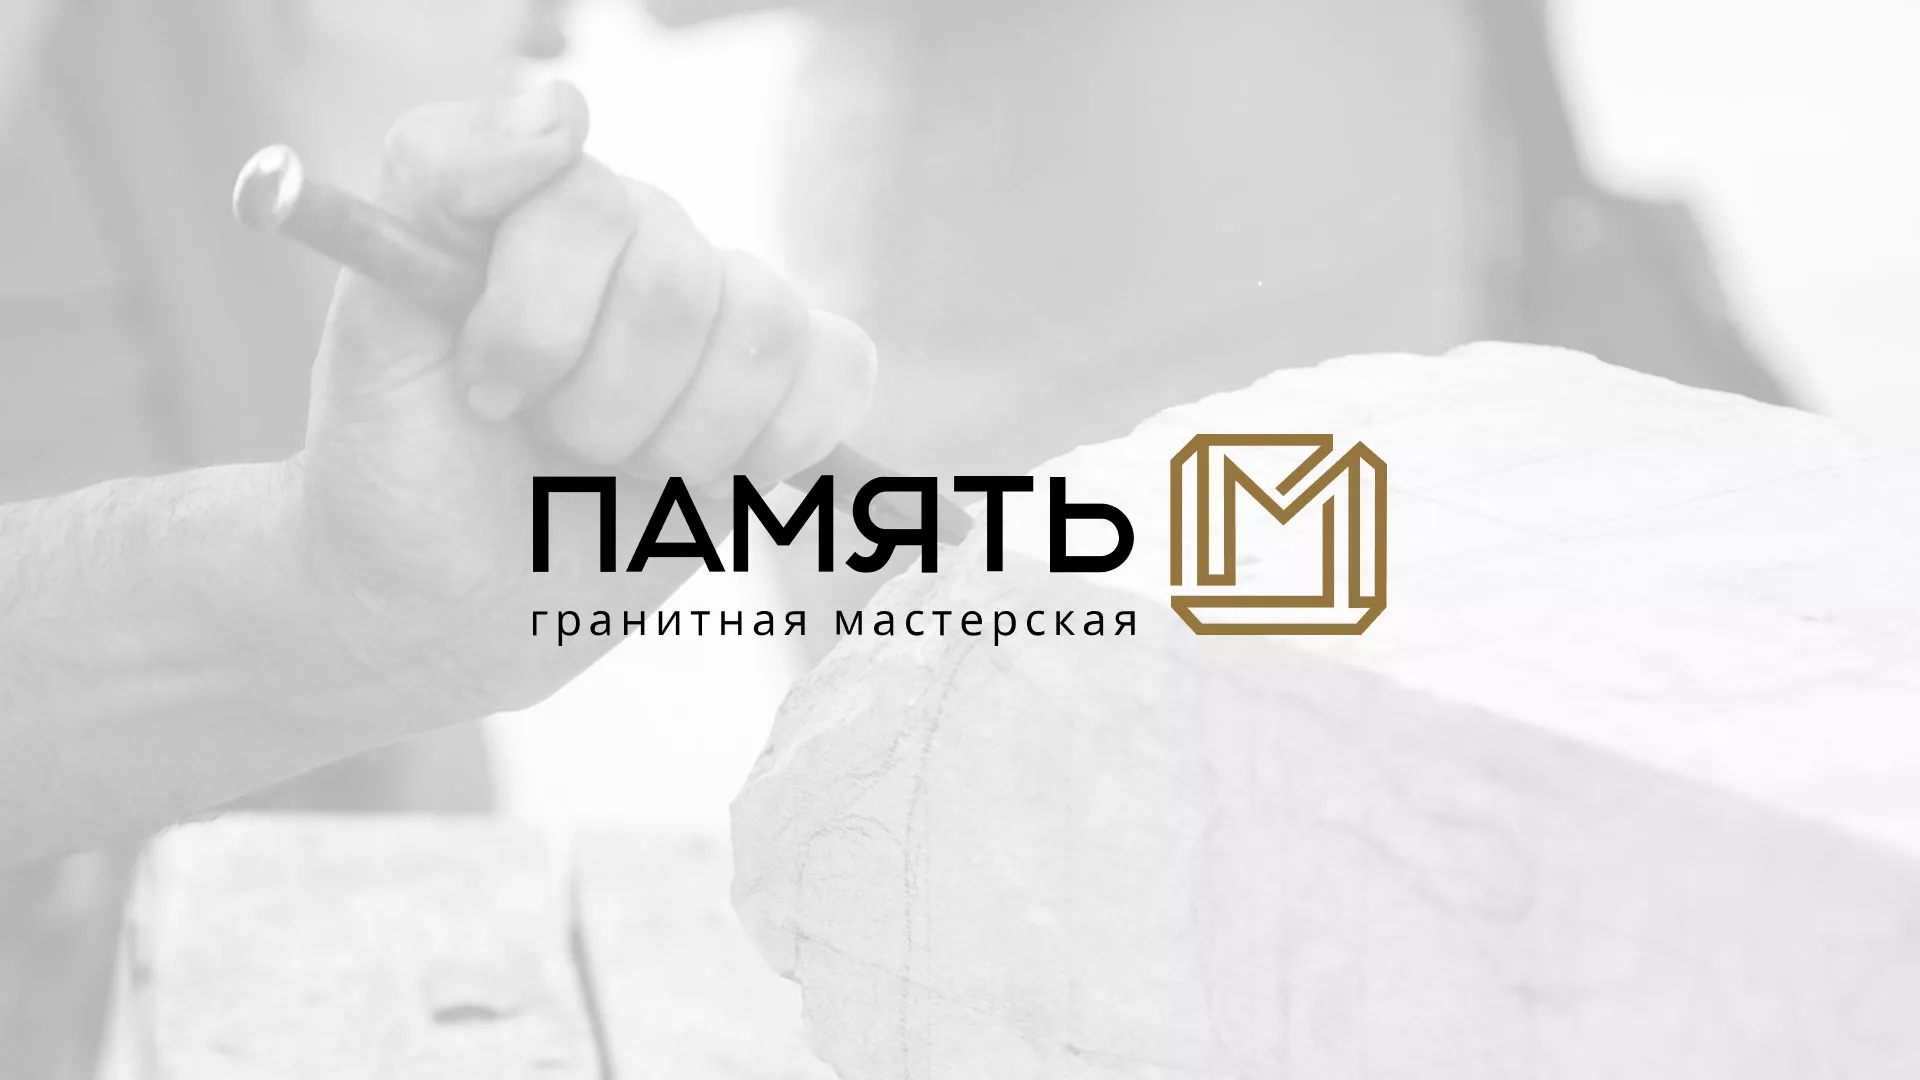 Разработка логотипа и сайта компании «Память-М» в Макушино